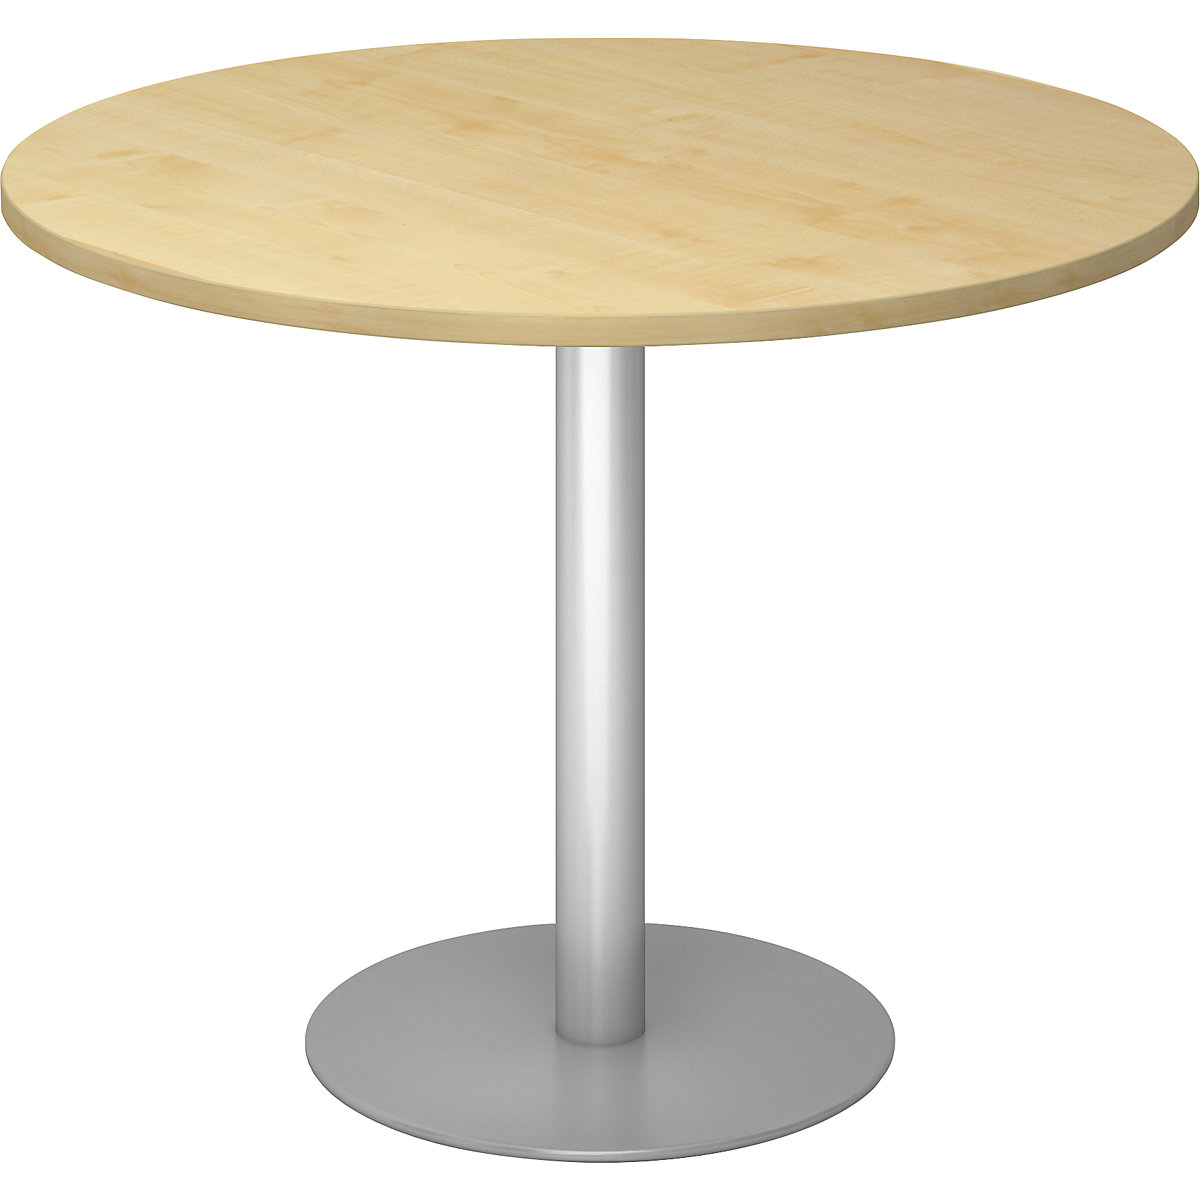 Jednací stůl, Ø 1000 mm, výška 755 mm, stříbrný podstavec, deska javorový dekor-4